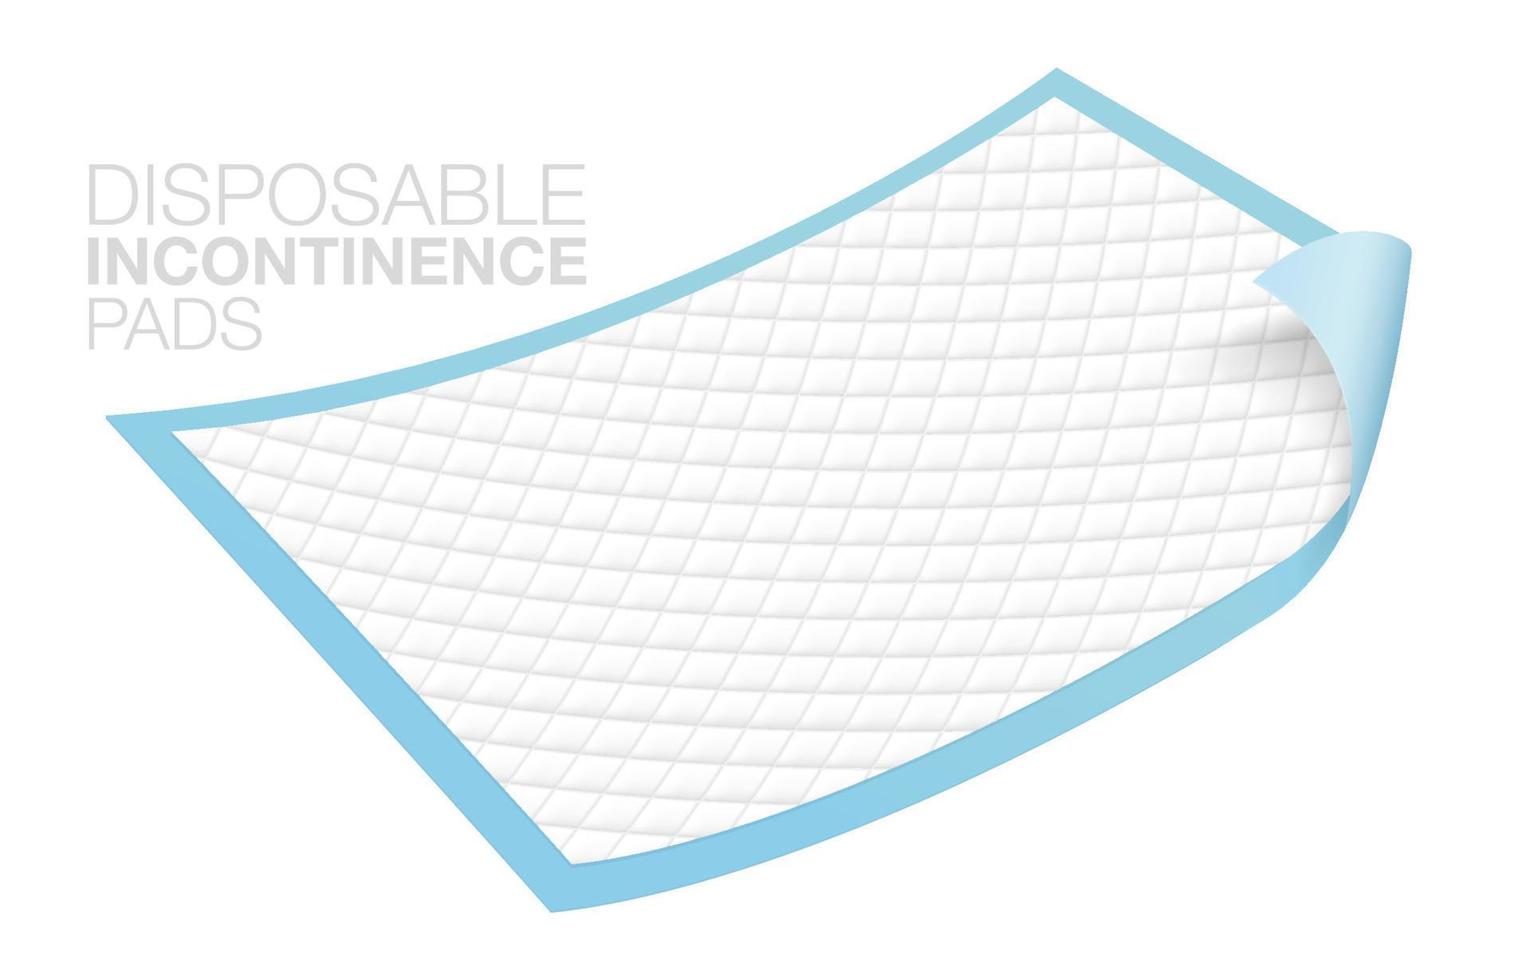 Almohadillas para incontinencia utilizadas para proteger las heces y la suciedad de los adultos. en la cama del paciente almohadillas de incontinencia desechables aisladas sobre fondo blanco. archivo eps realista vector